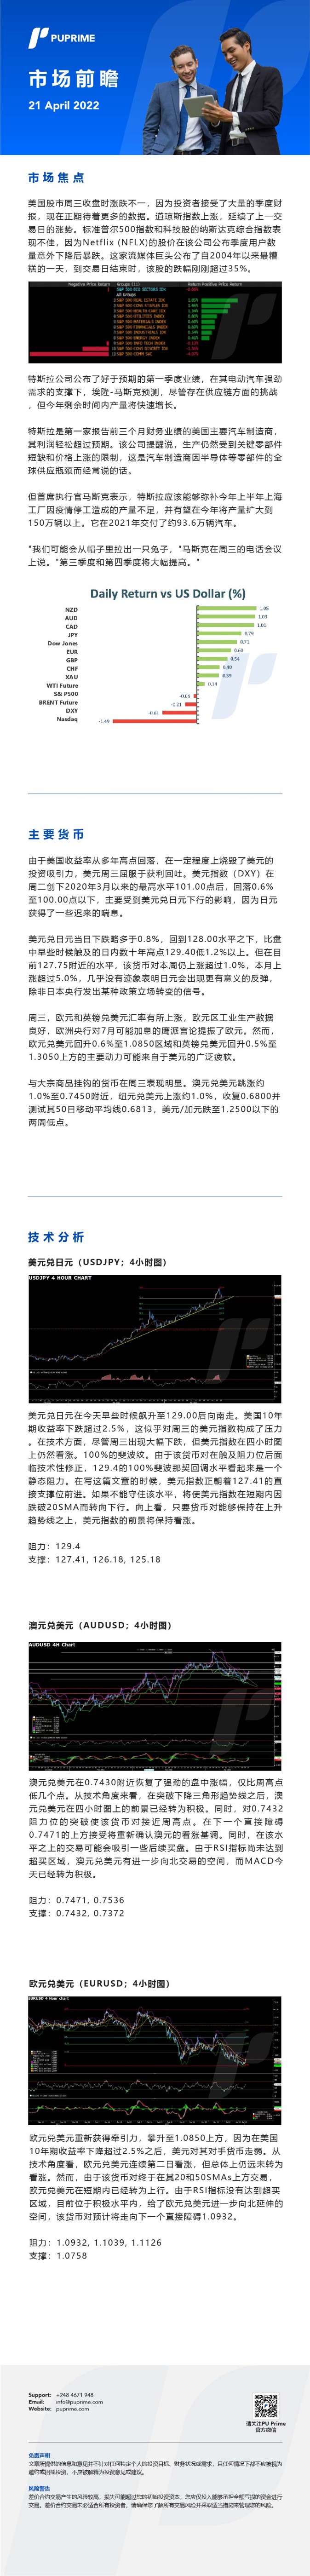 21042022 Daily Market Analysis__CHN.jpg